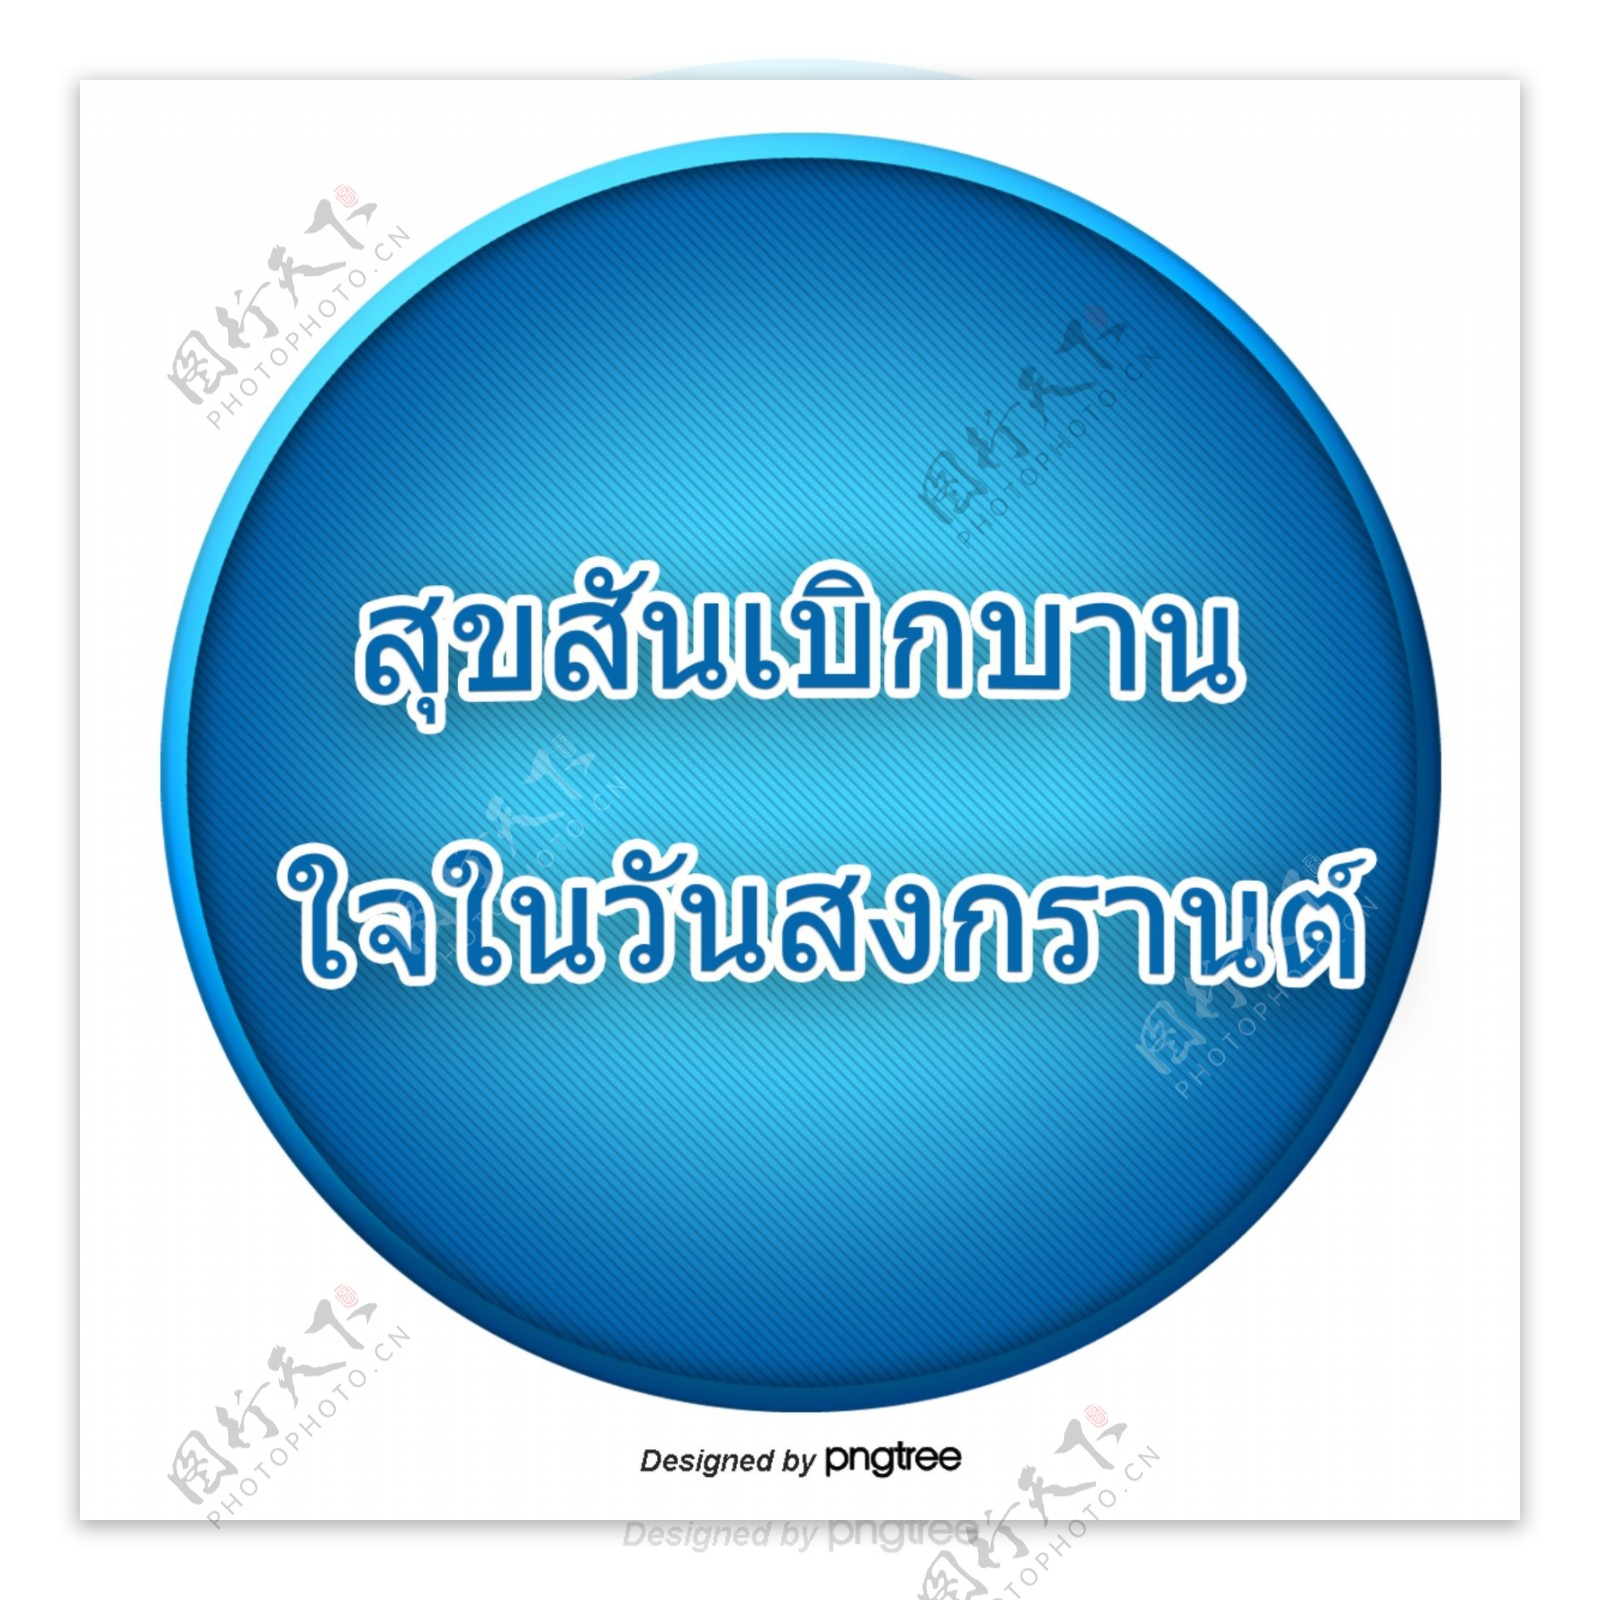 汉字字体的泰国泼水节快乐蓝色圆圈